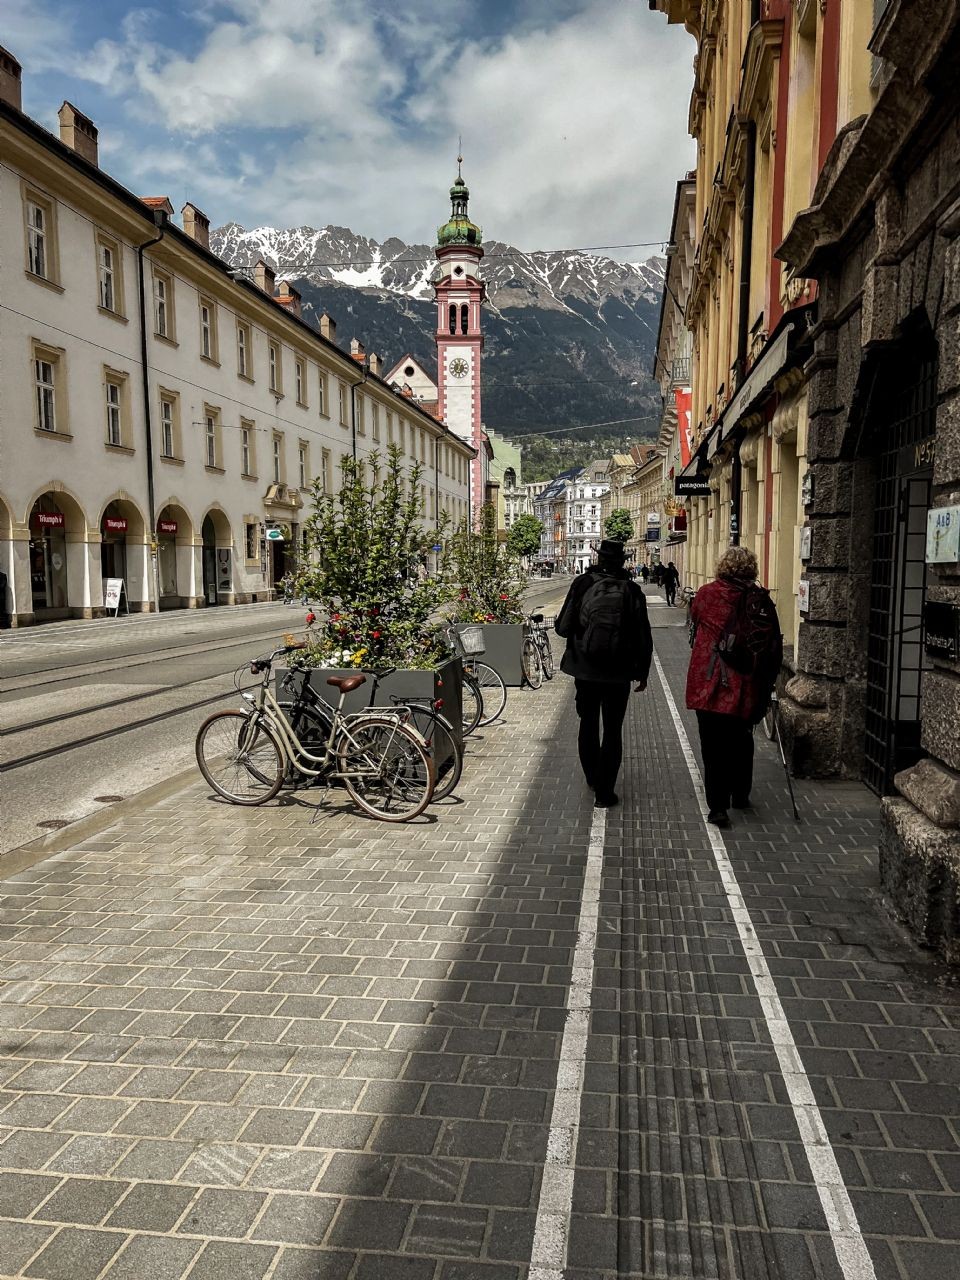 Exhilarating Activities to Try in Innsbruck, Austria